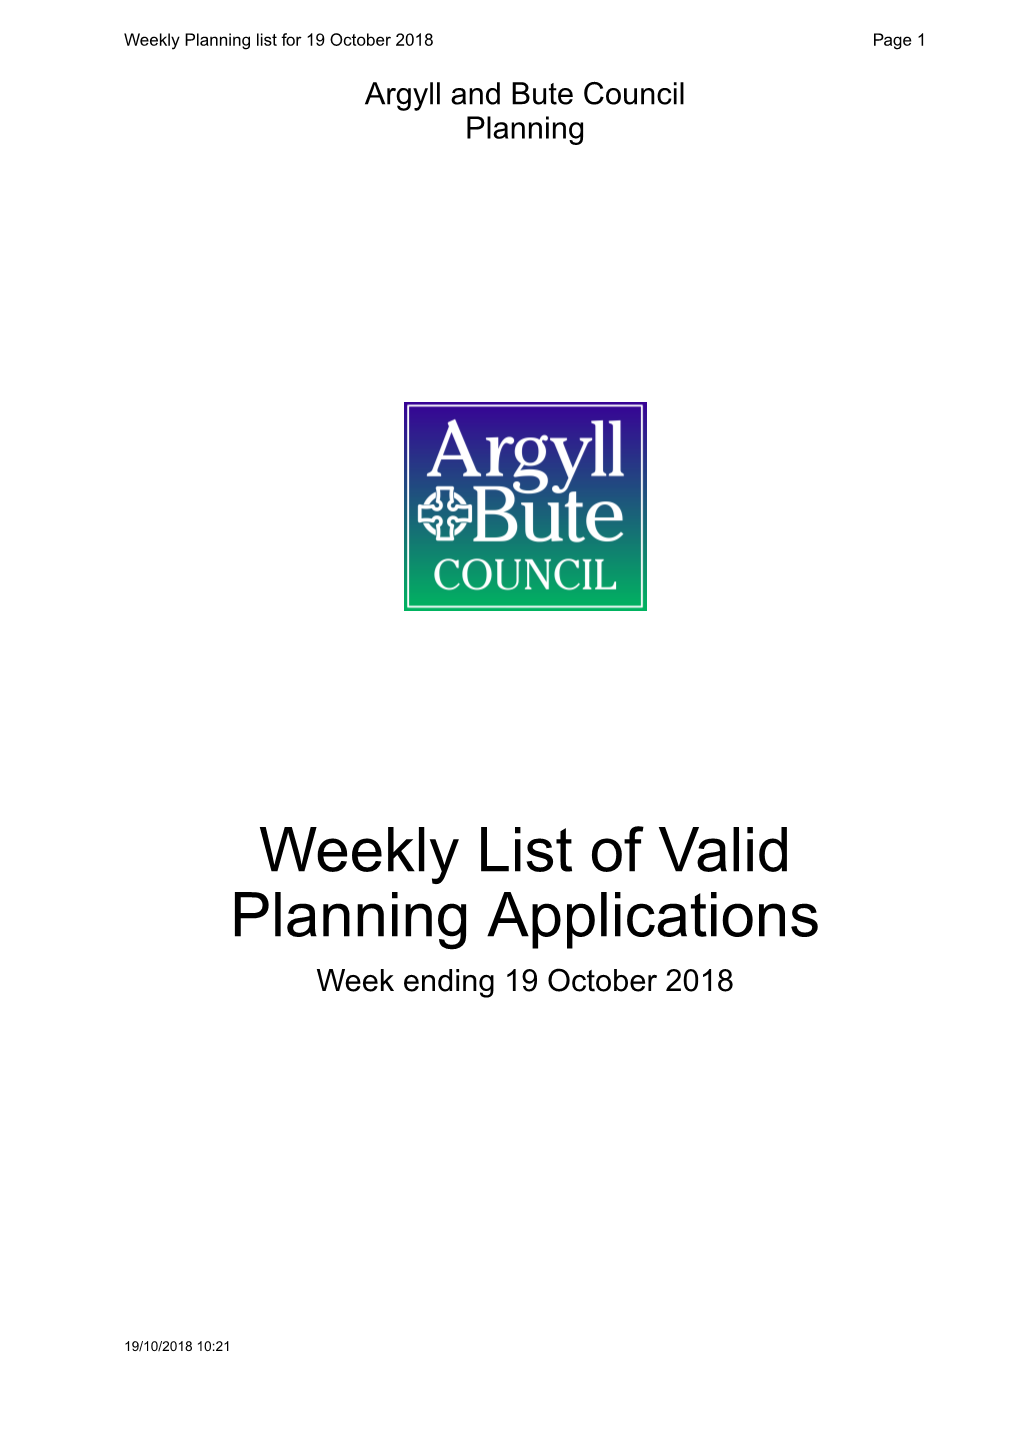 Weekly List of Valid Planning Applications Week Ending 19 October 2018